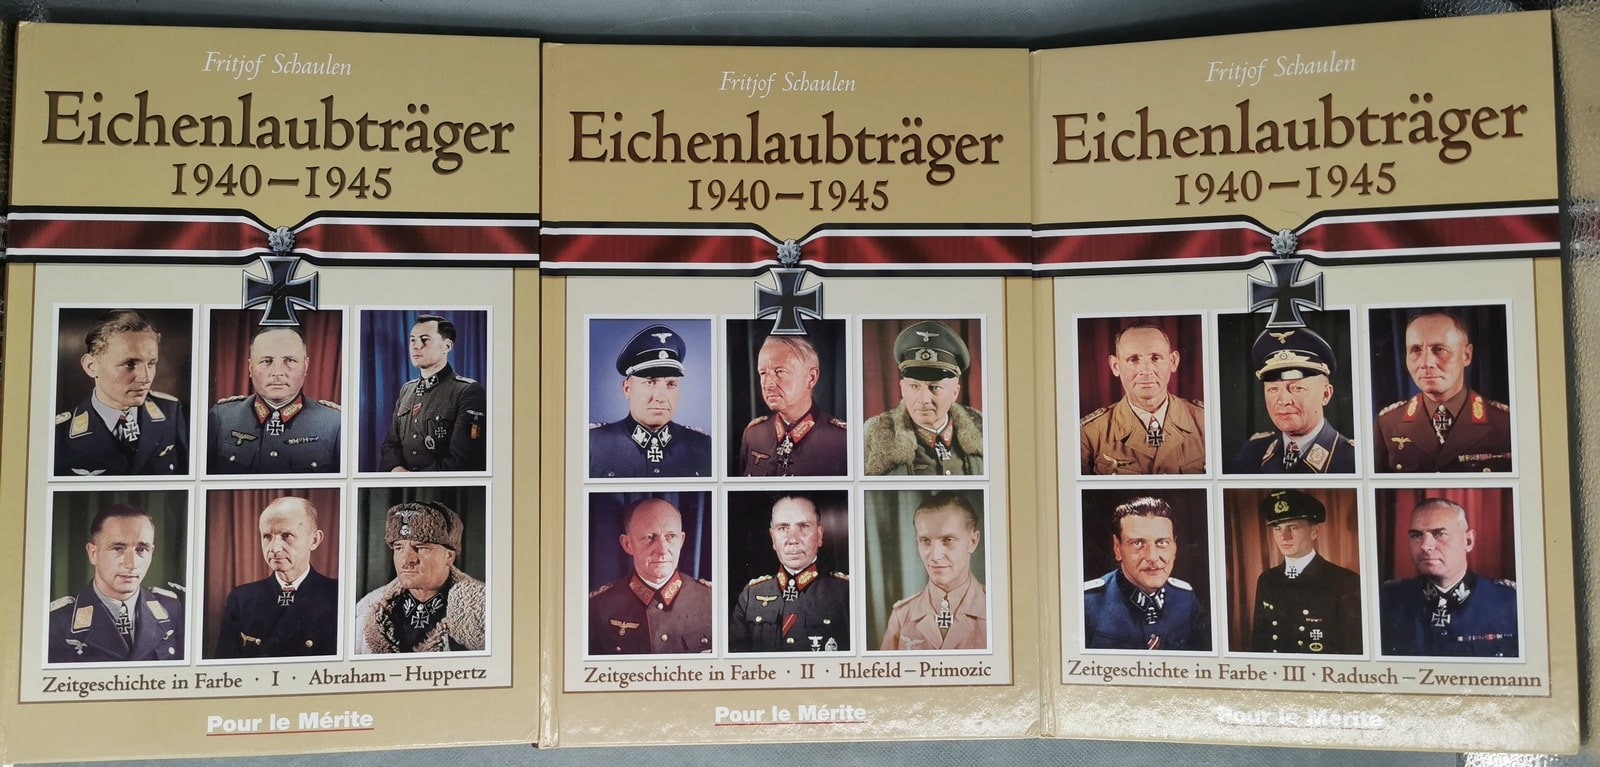 Buch: Eichenlaubträger 1940 - 1945, komplett 3 Bände; Fritjof Schaulen